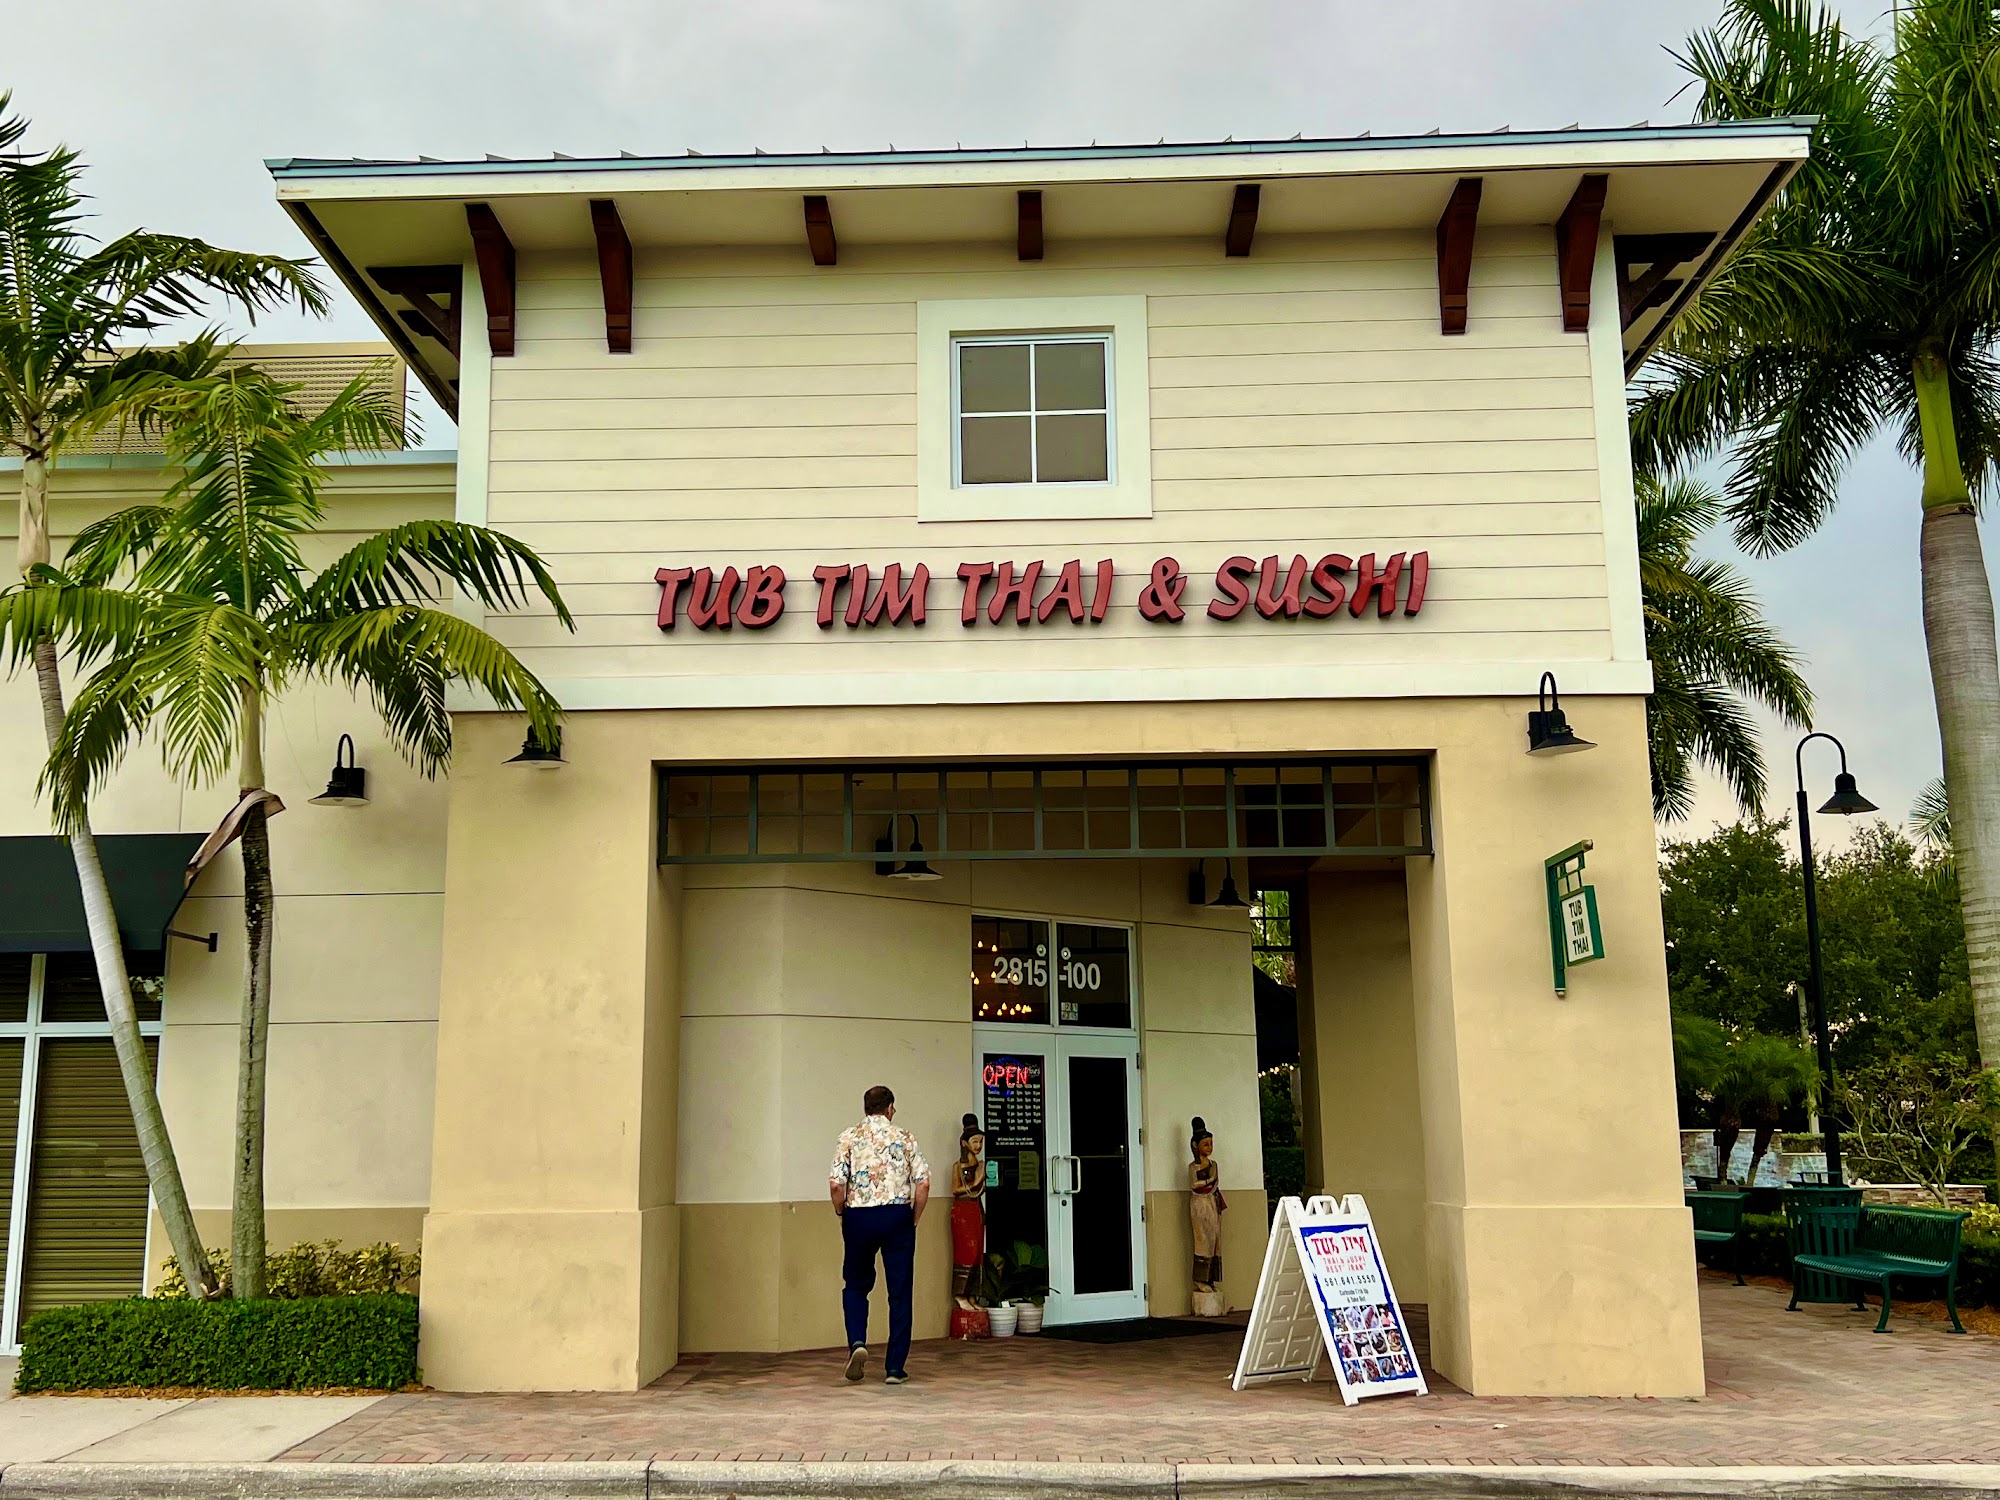 Tub Tim Thai & Sushi Restaurant